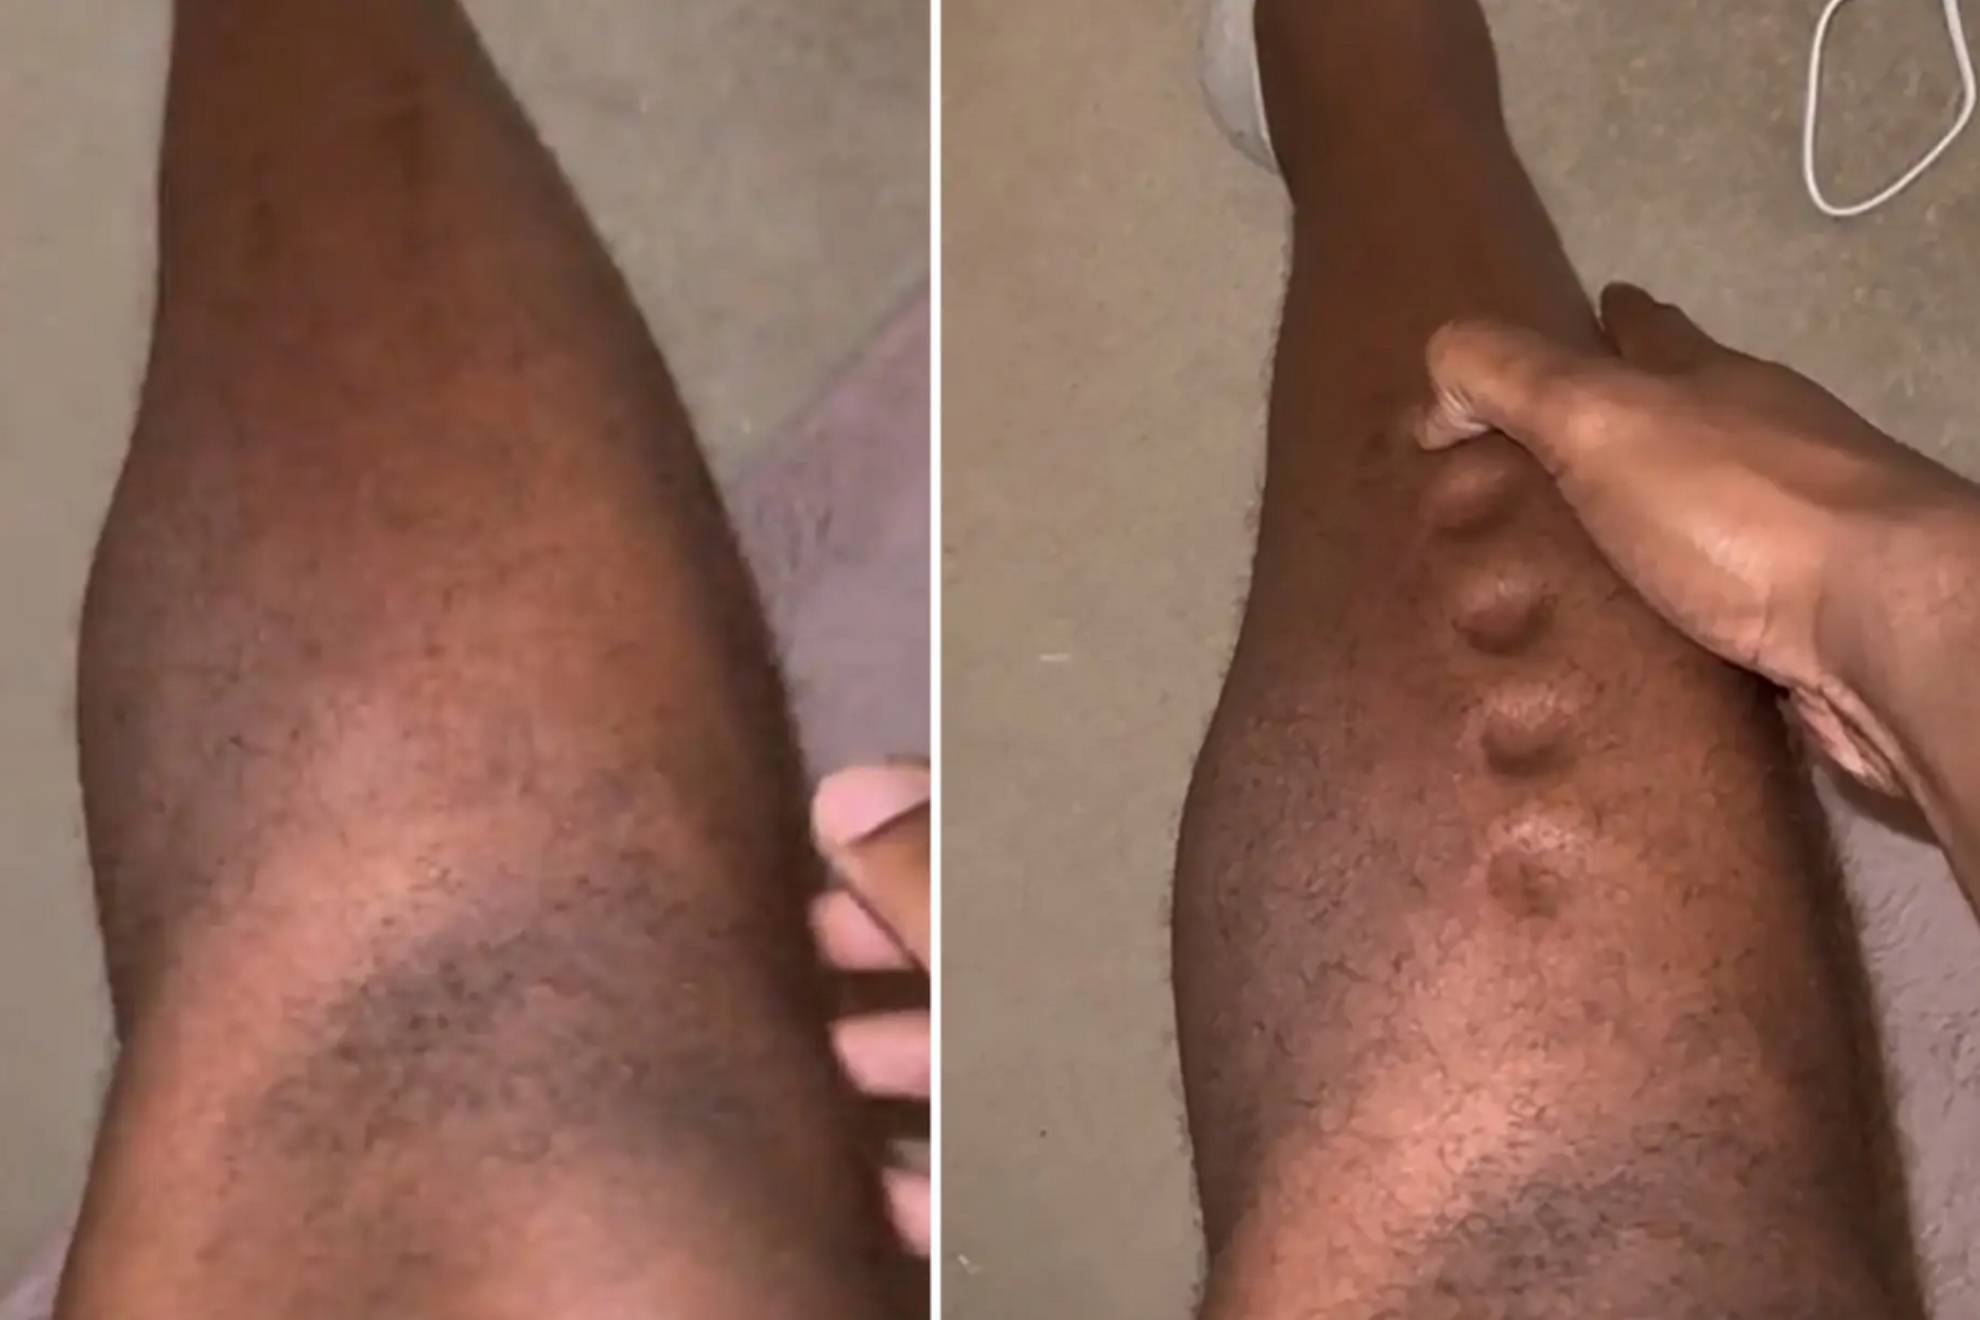 El "asqueroso" vídeo viral de un atleta olímpico: se le forman "agujeros locos" en la pierna al apretarse